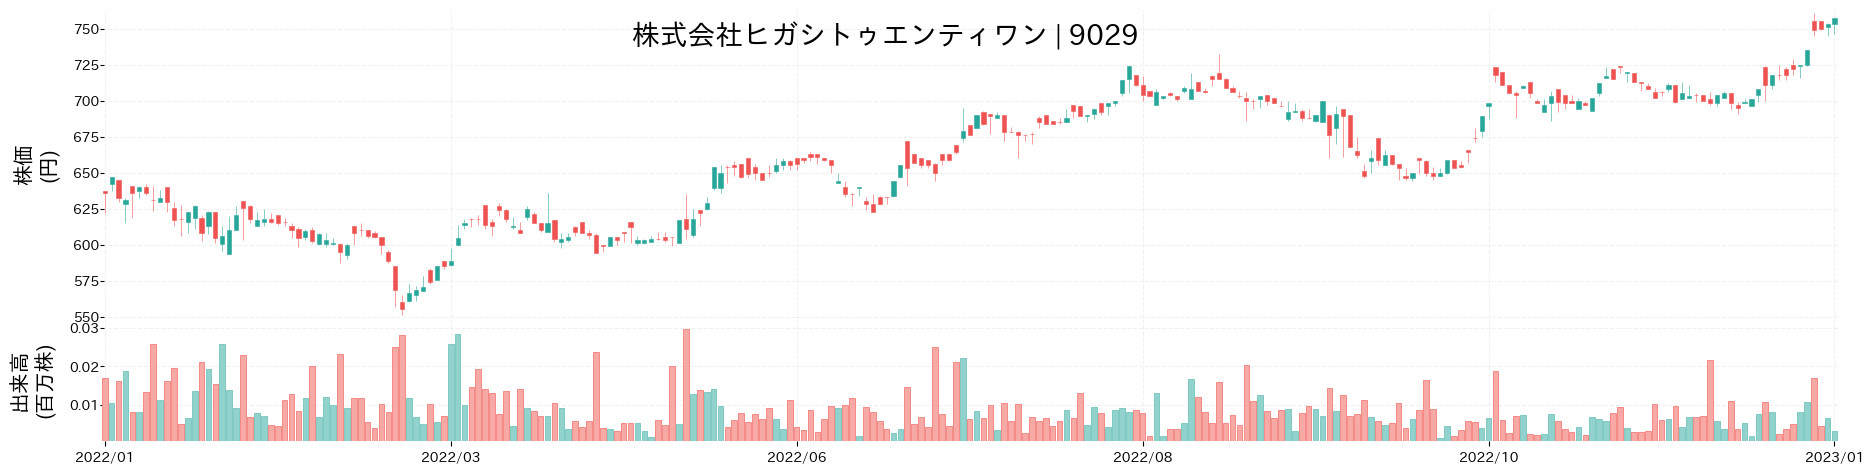 ヒガシトゥエンティワンの株価推移(2022)